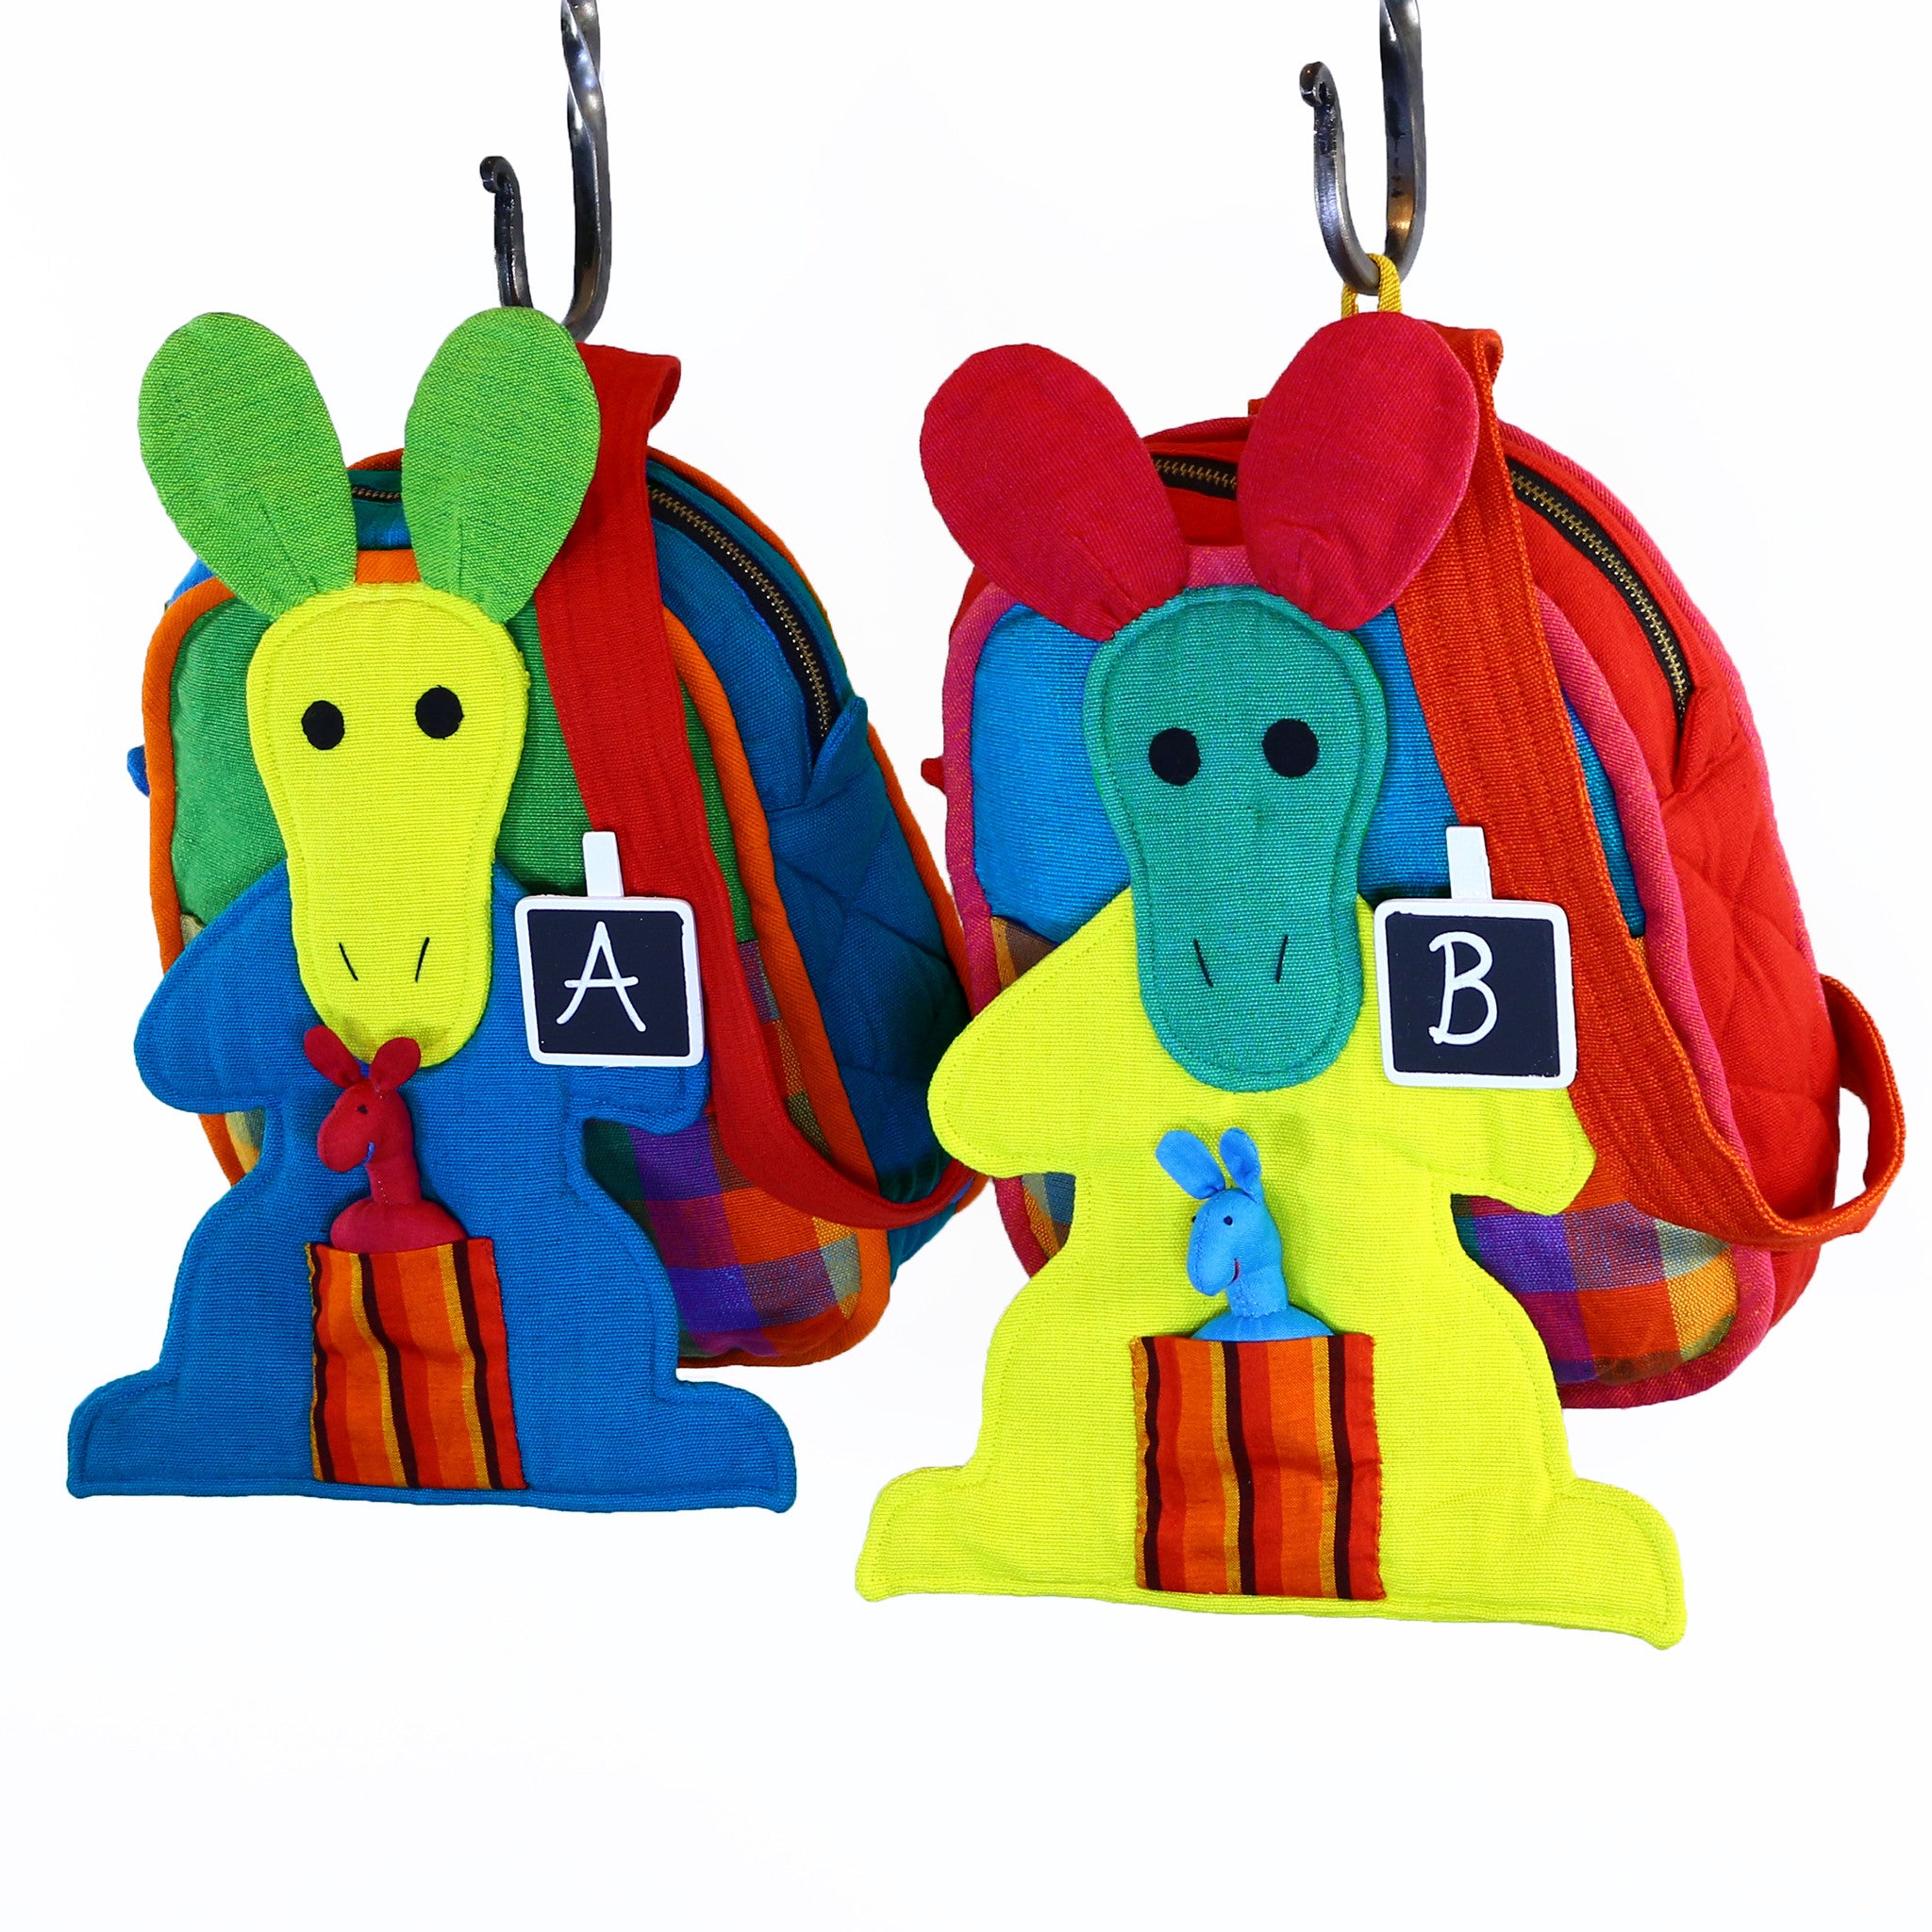 Kangaroo Backpack – Carousel fabric patterns